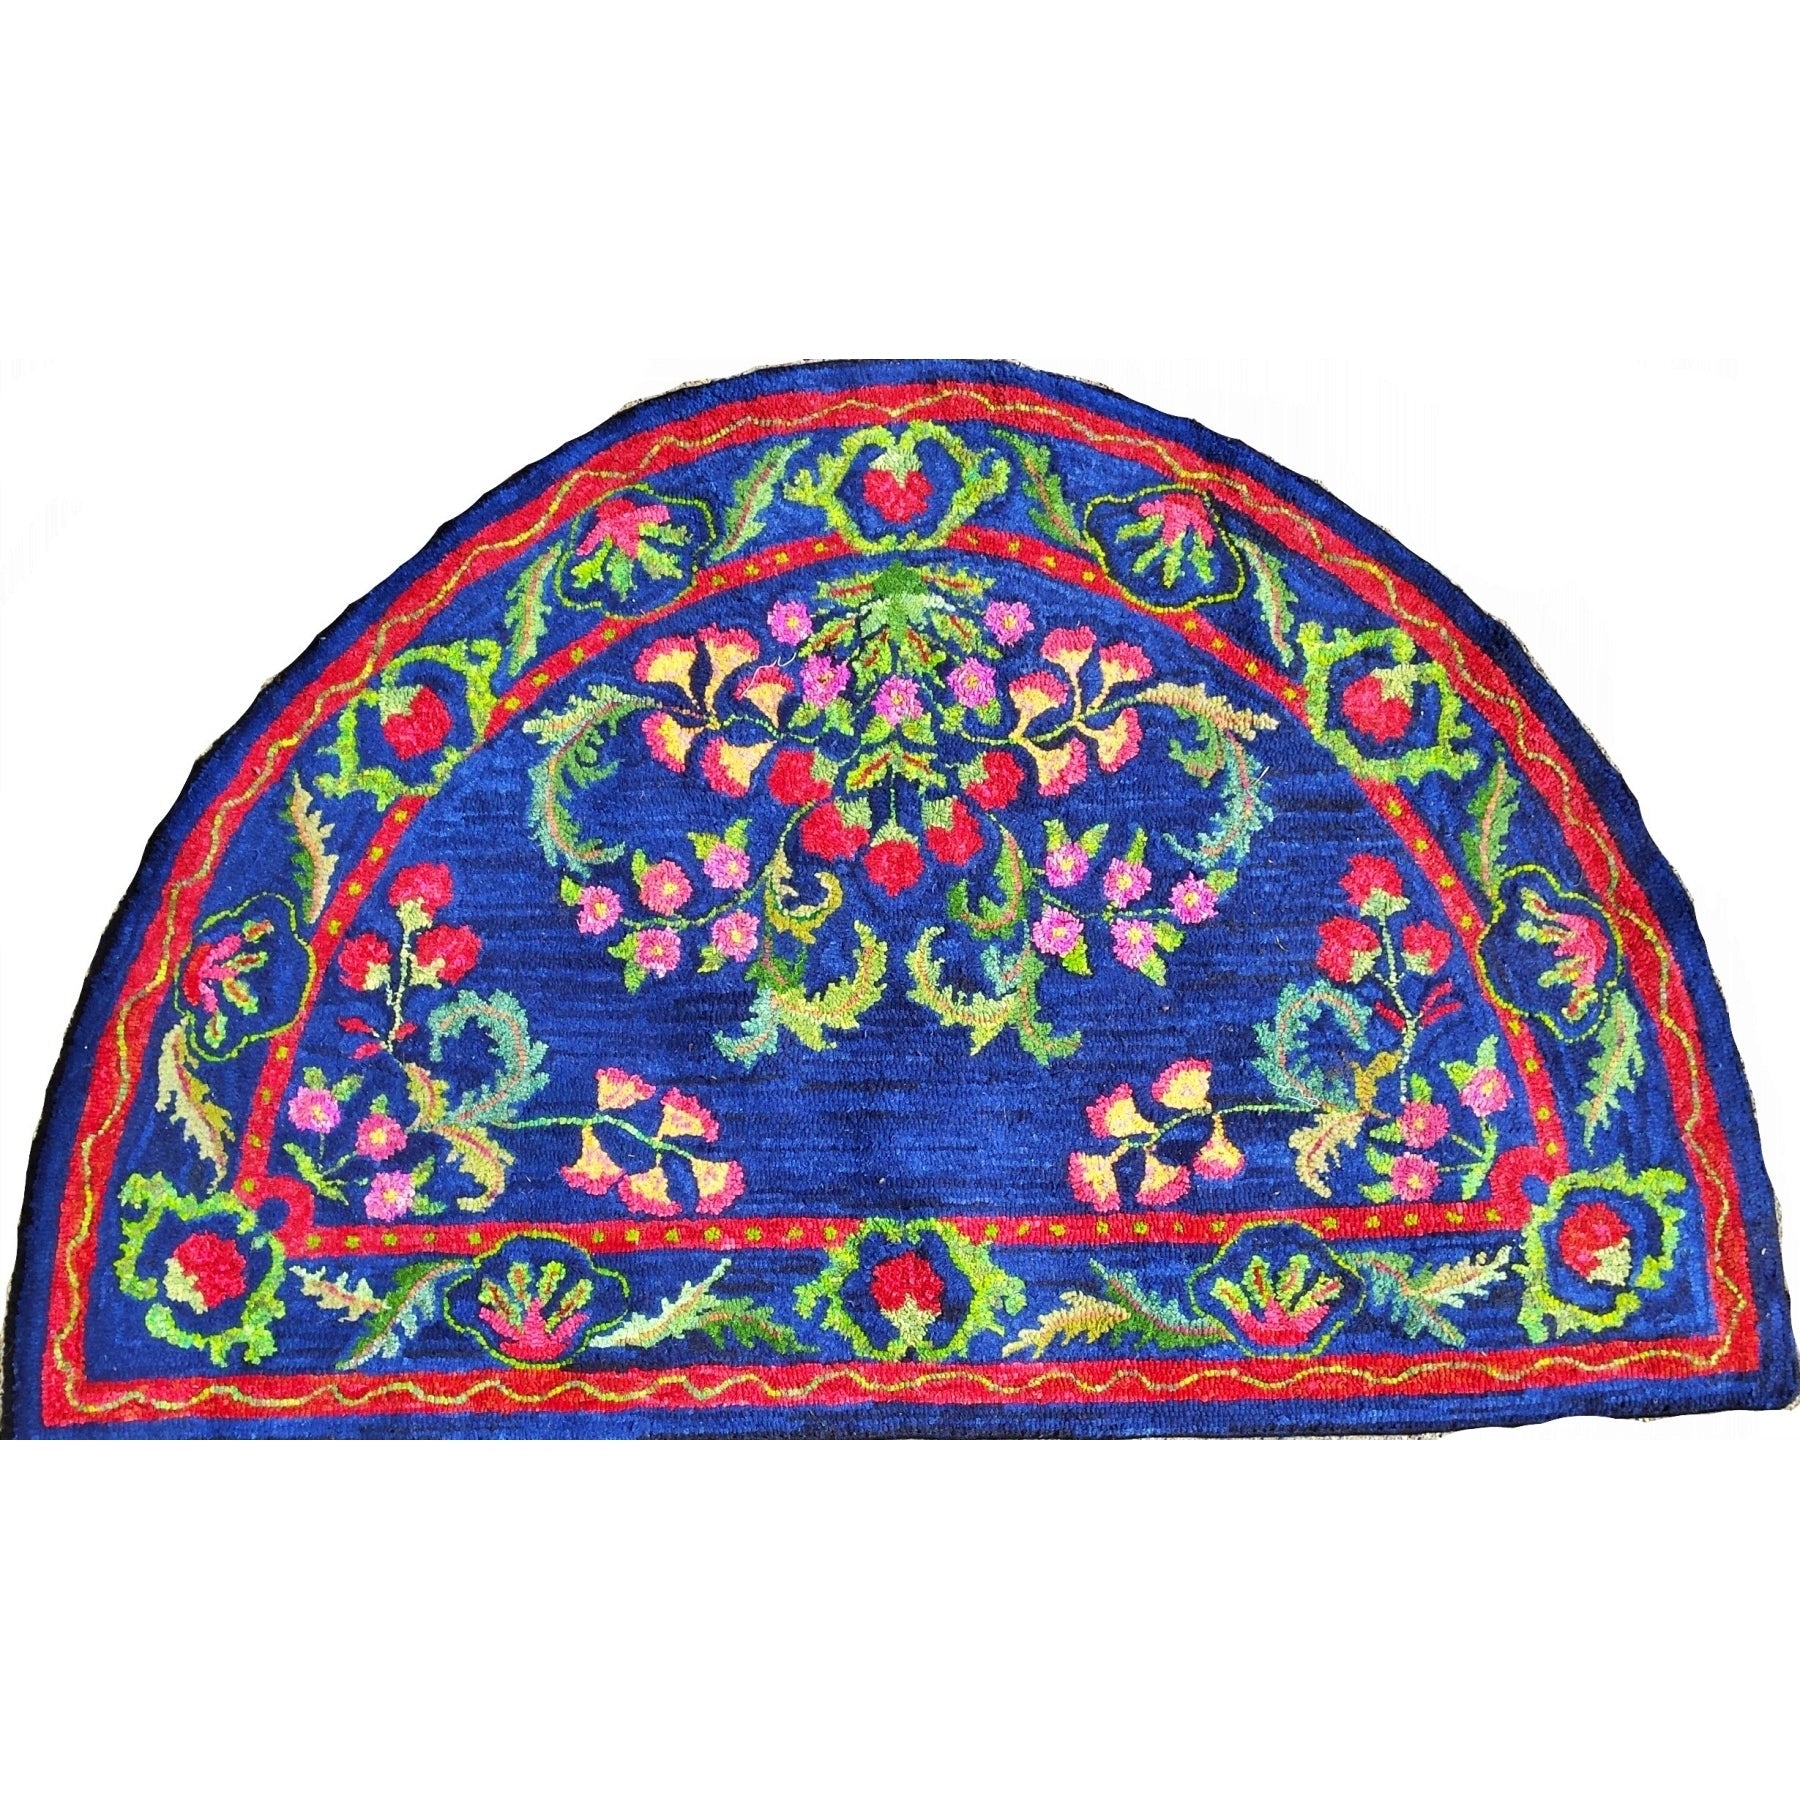 Kashan, rug hooked by Karen Guffey